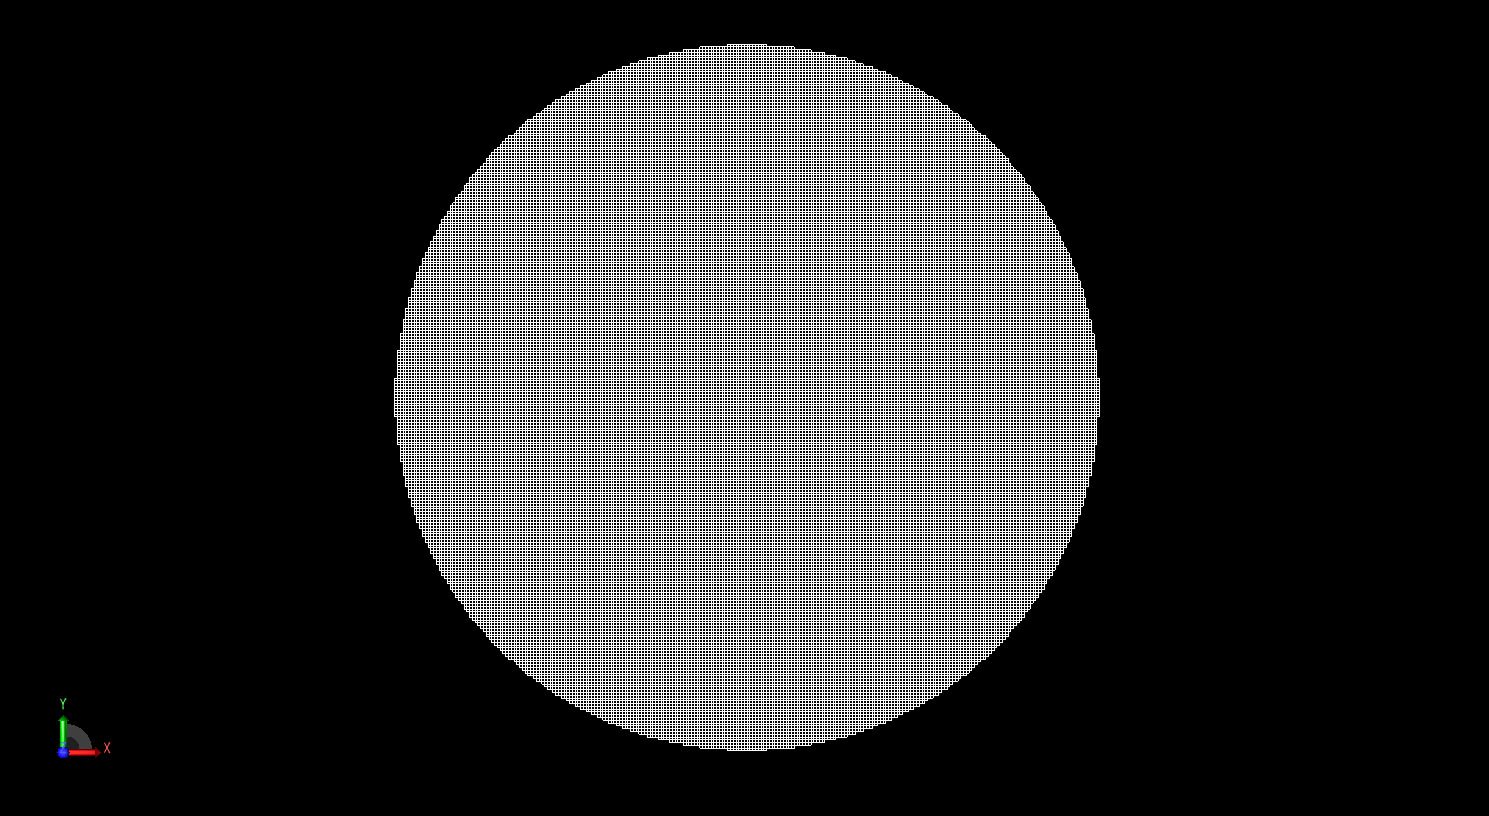 图 2 FDTD 网格中的球体，单元尺寸为 1 毫米。